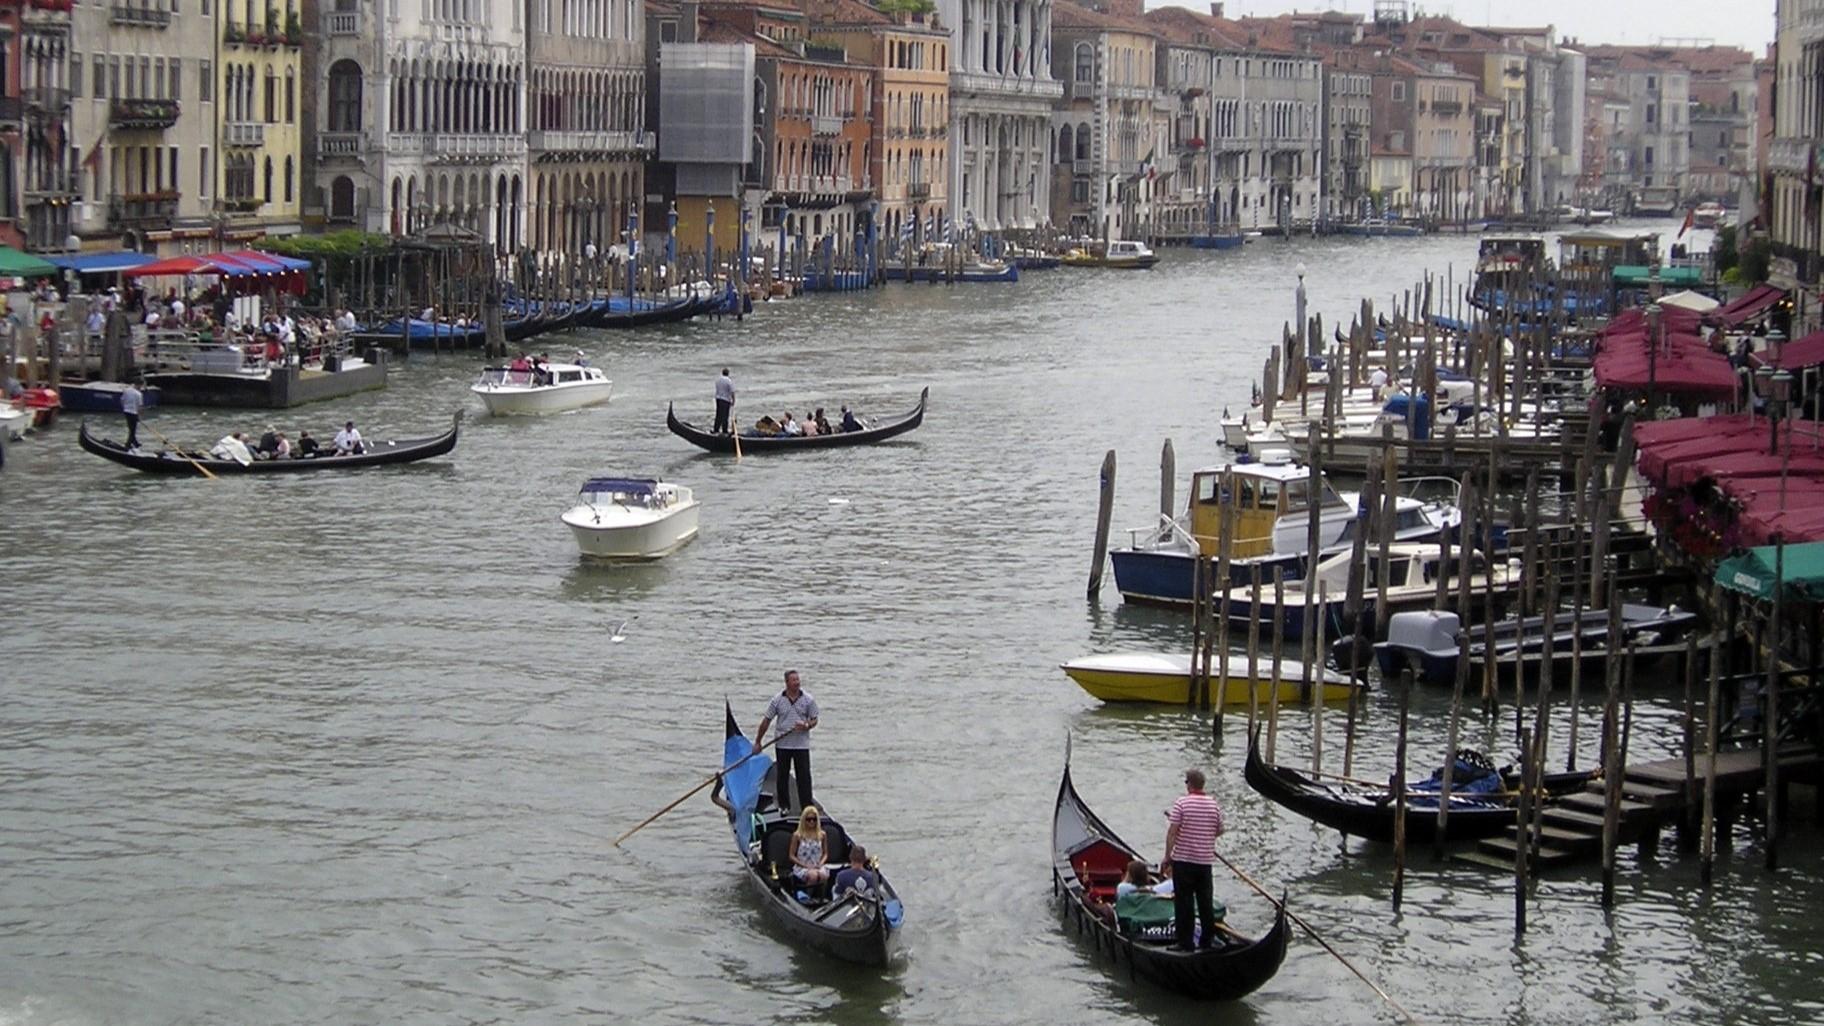 Nu kostar det att besöka Venedig under dagen. Alla är inte nöjda med beslutet och boende samt föreningar i staden har valt att protestera mot införandet. Arkivbild. Foto: Betsy Vereckey AP/TT